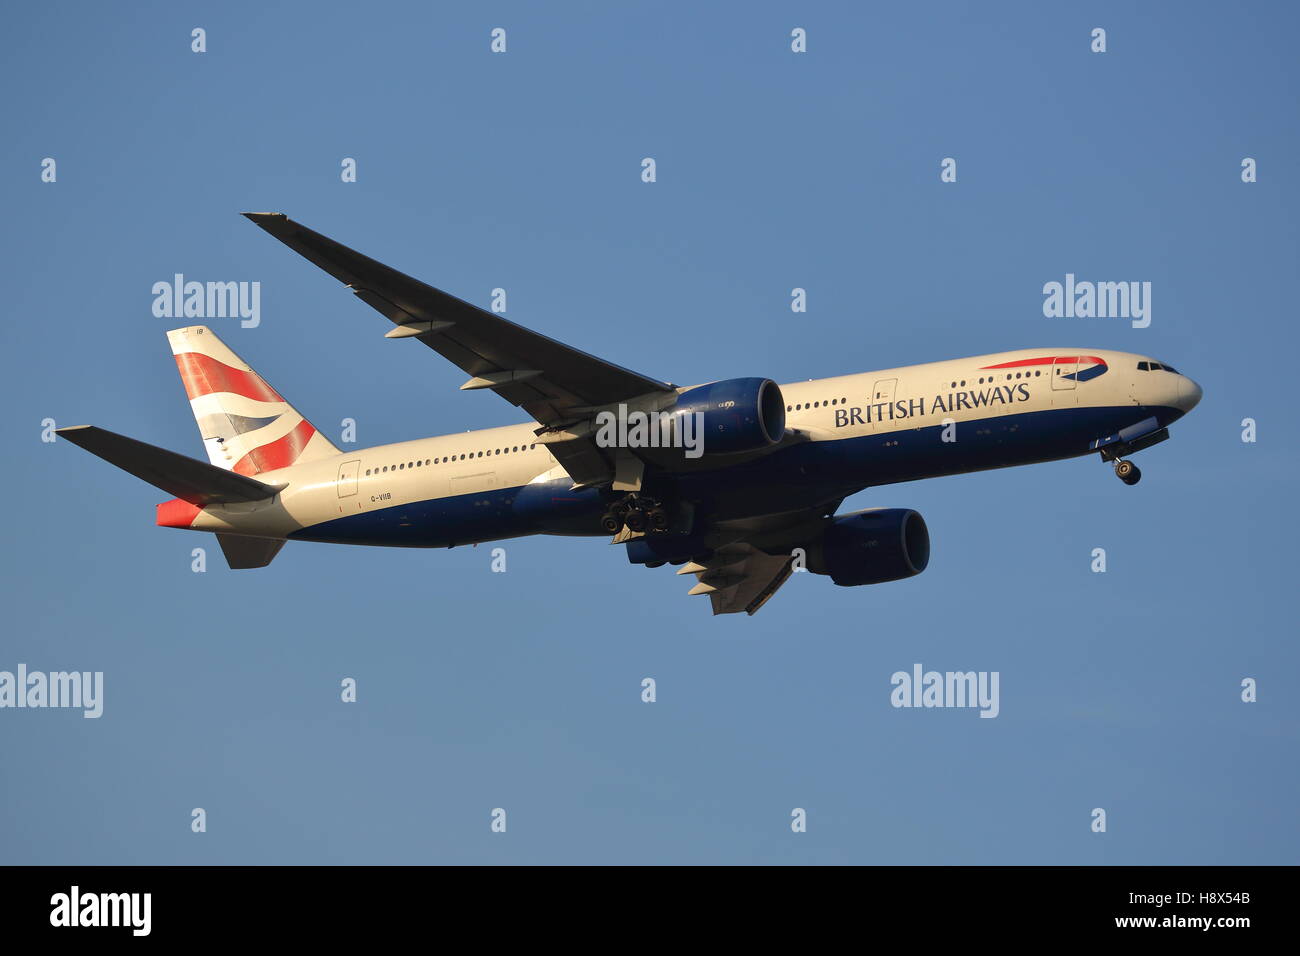 British Airways Boeing 777-200ER G-VIIB departing from London Heathrow Airport, UK Stock Photo